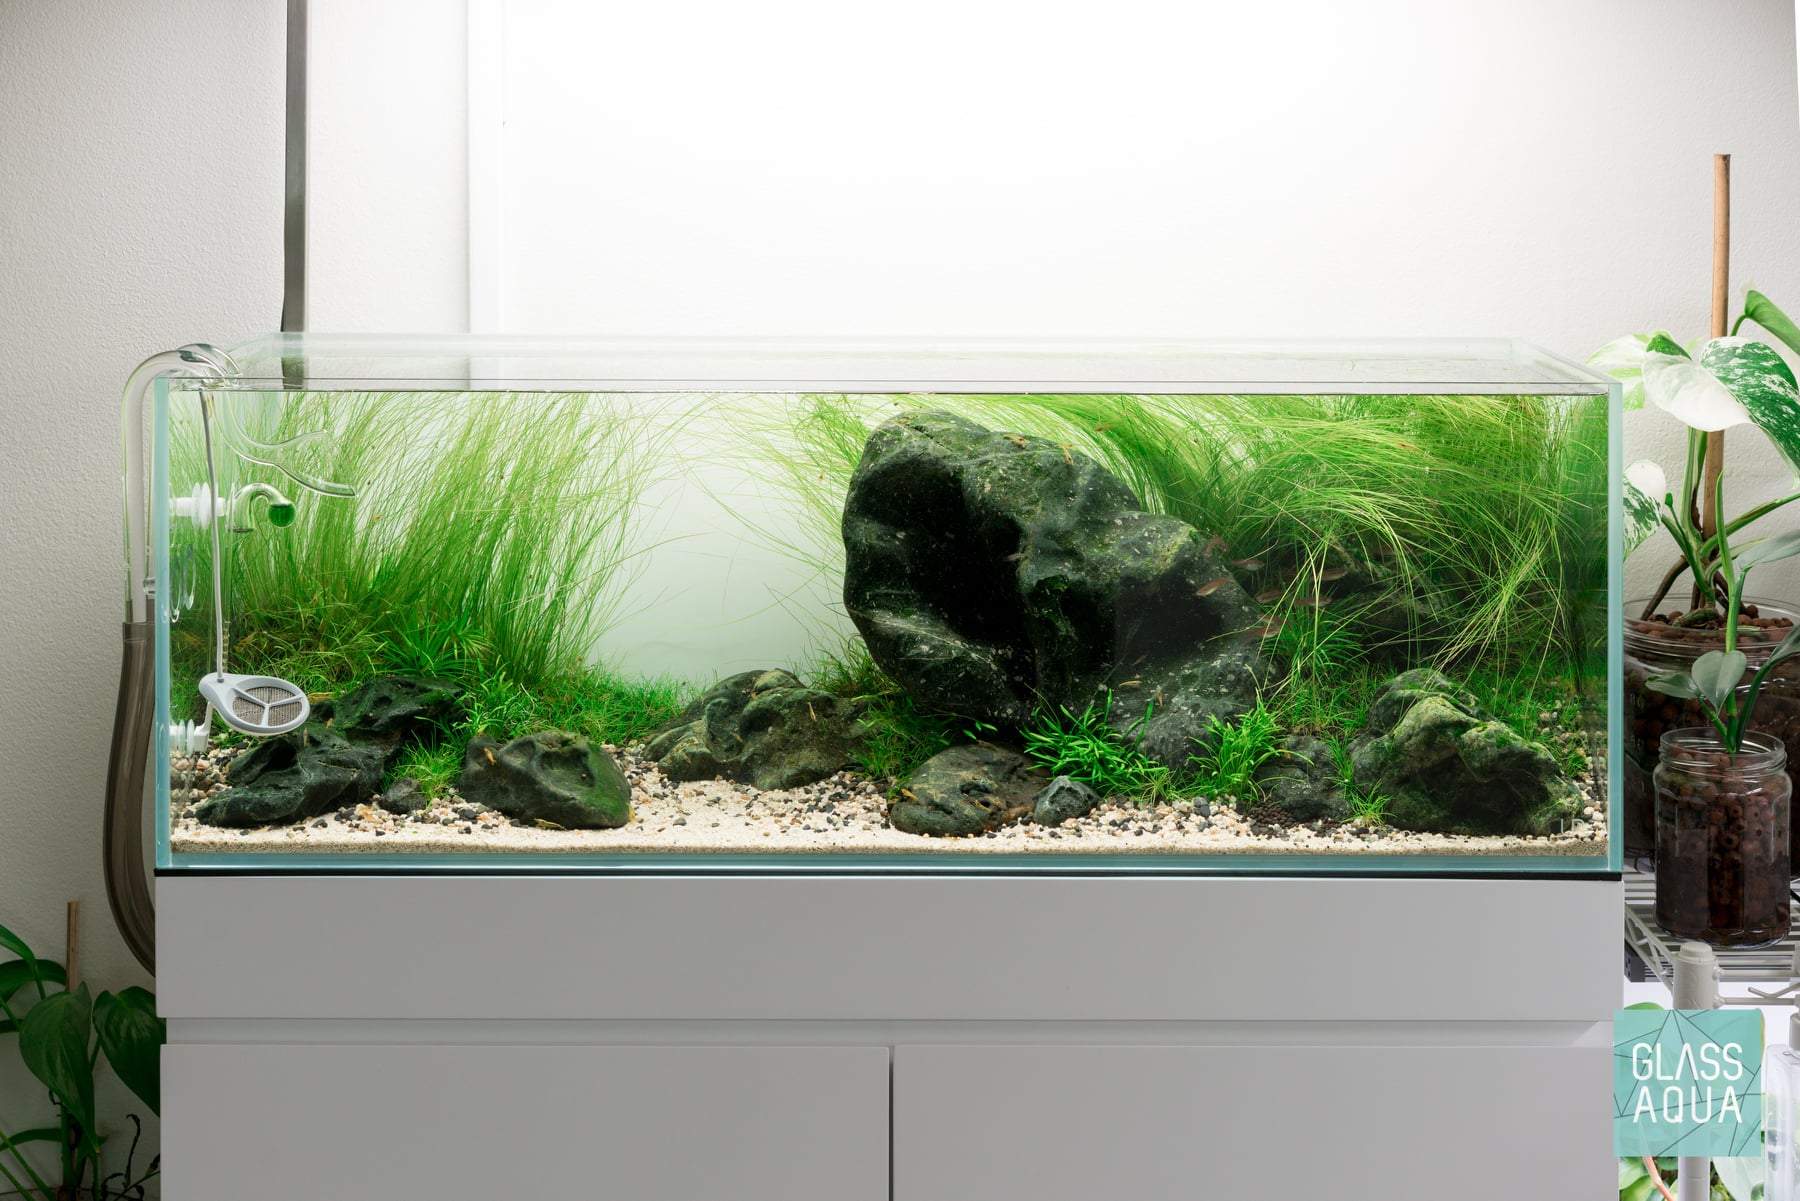 Natural River Rock Gravel Aquarium Hardscape for Planted Aquarium Tank –  Glass Aqua